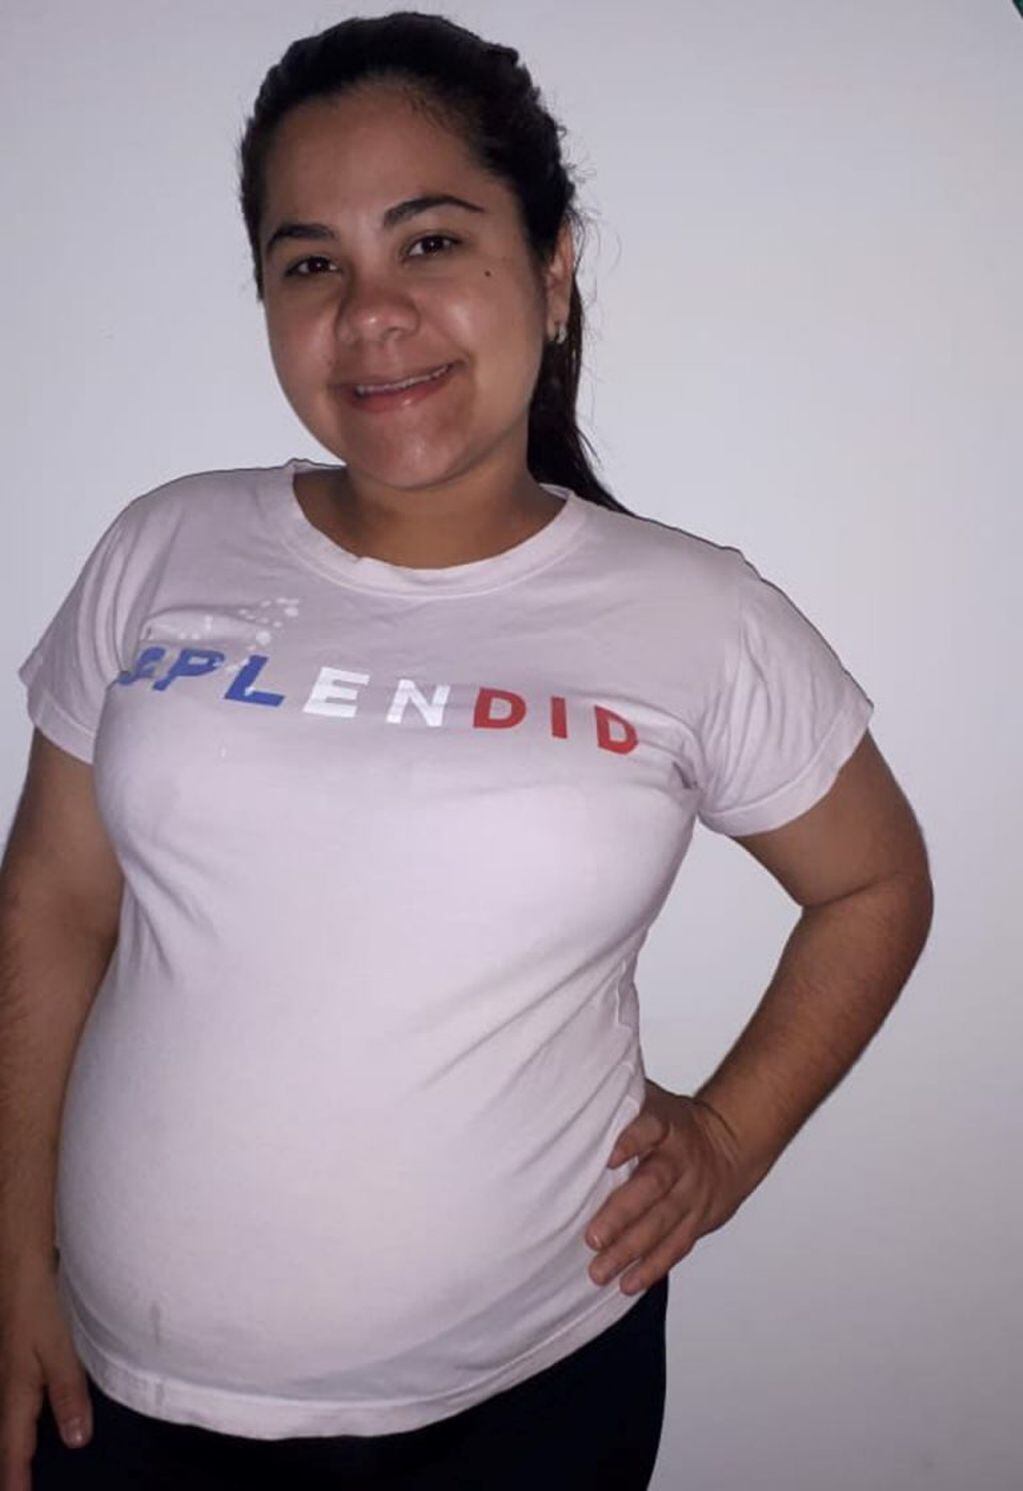 Reinaldo caminará 8000 kilómetros para presenciar el parto de su bebé junto a Fabiola